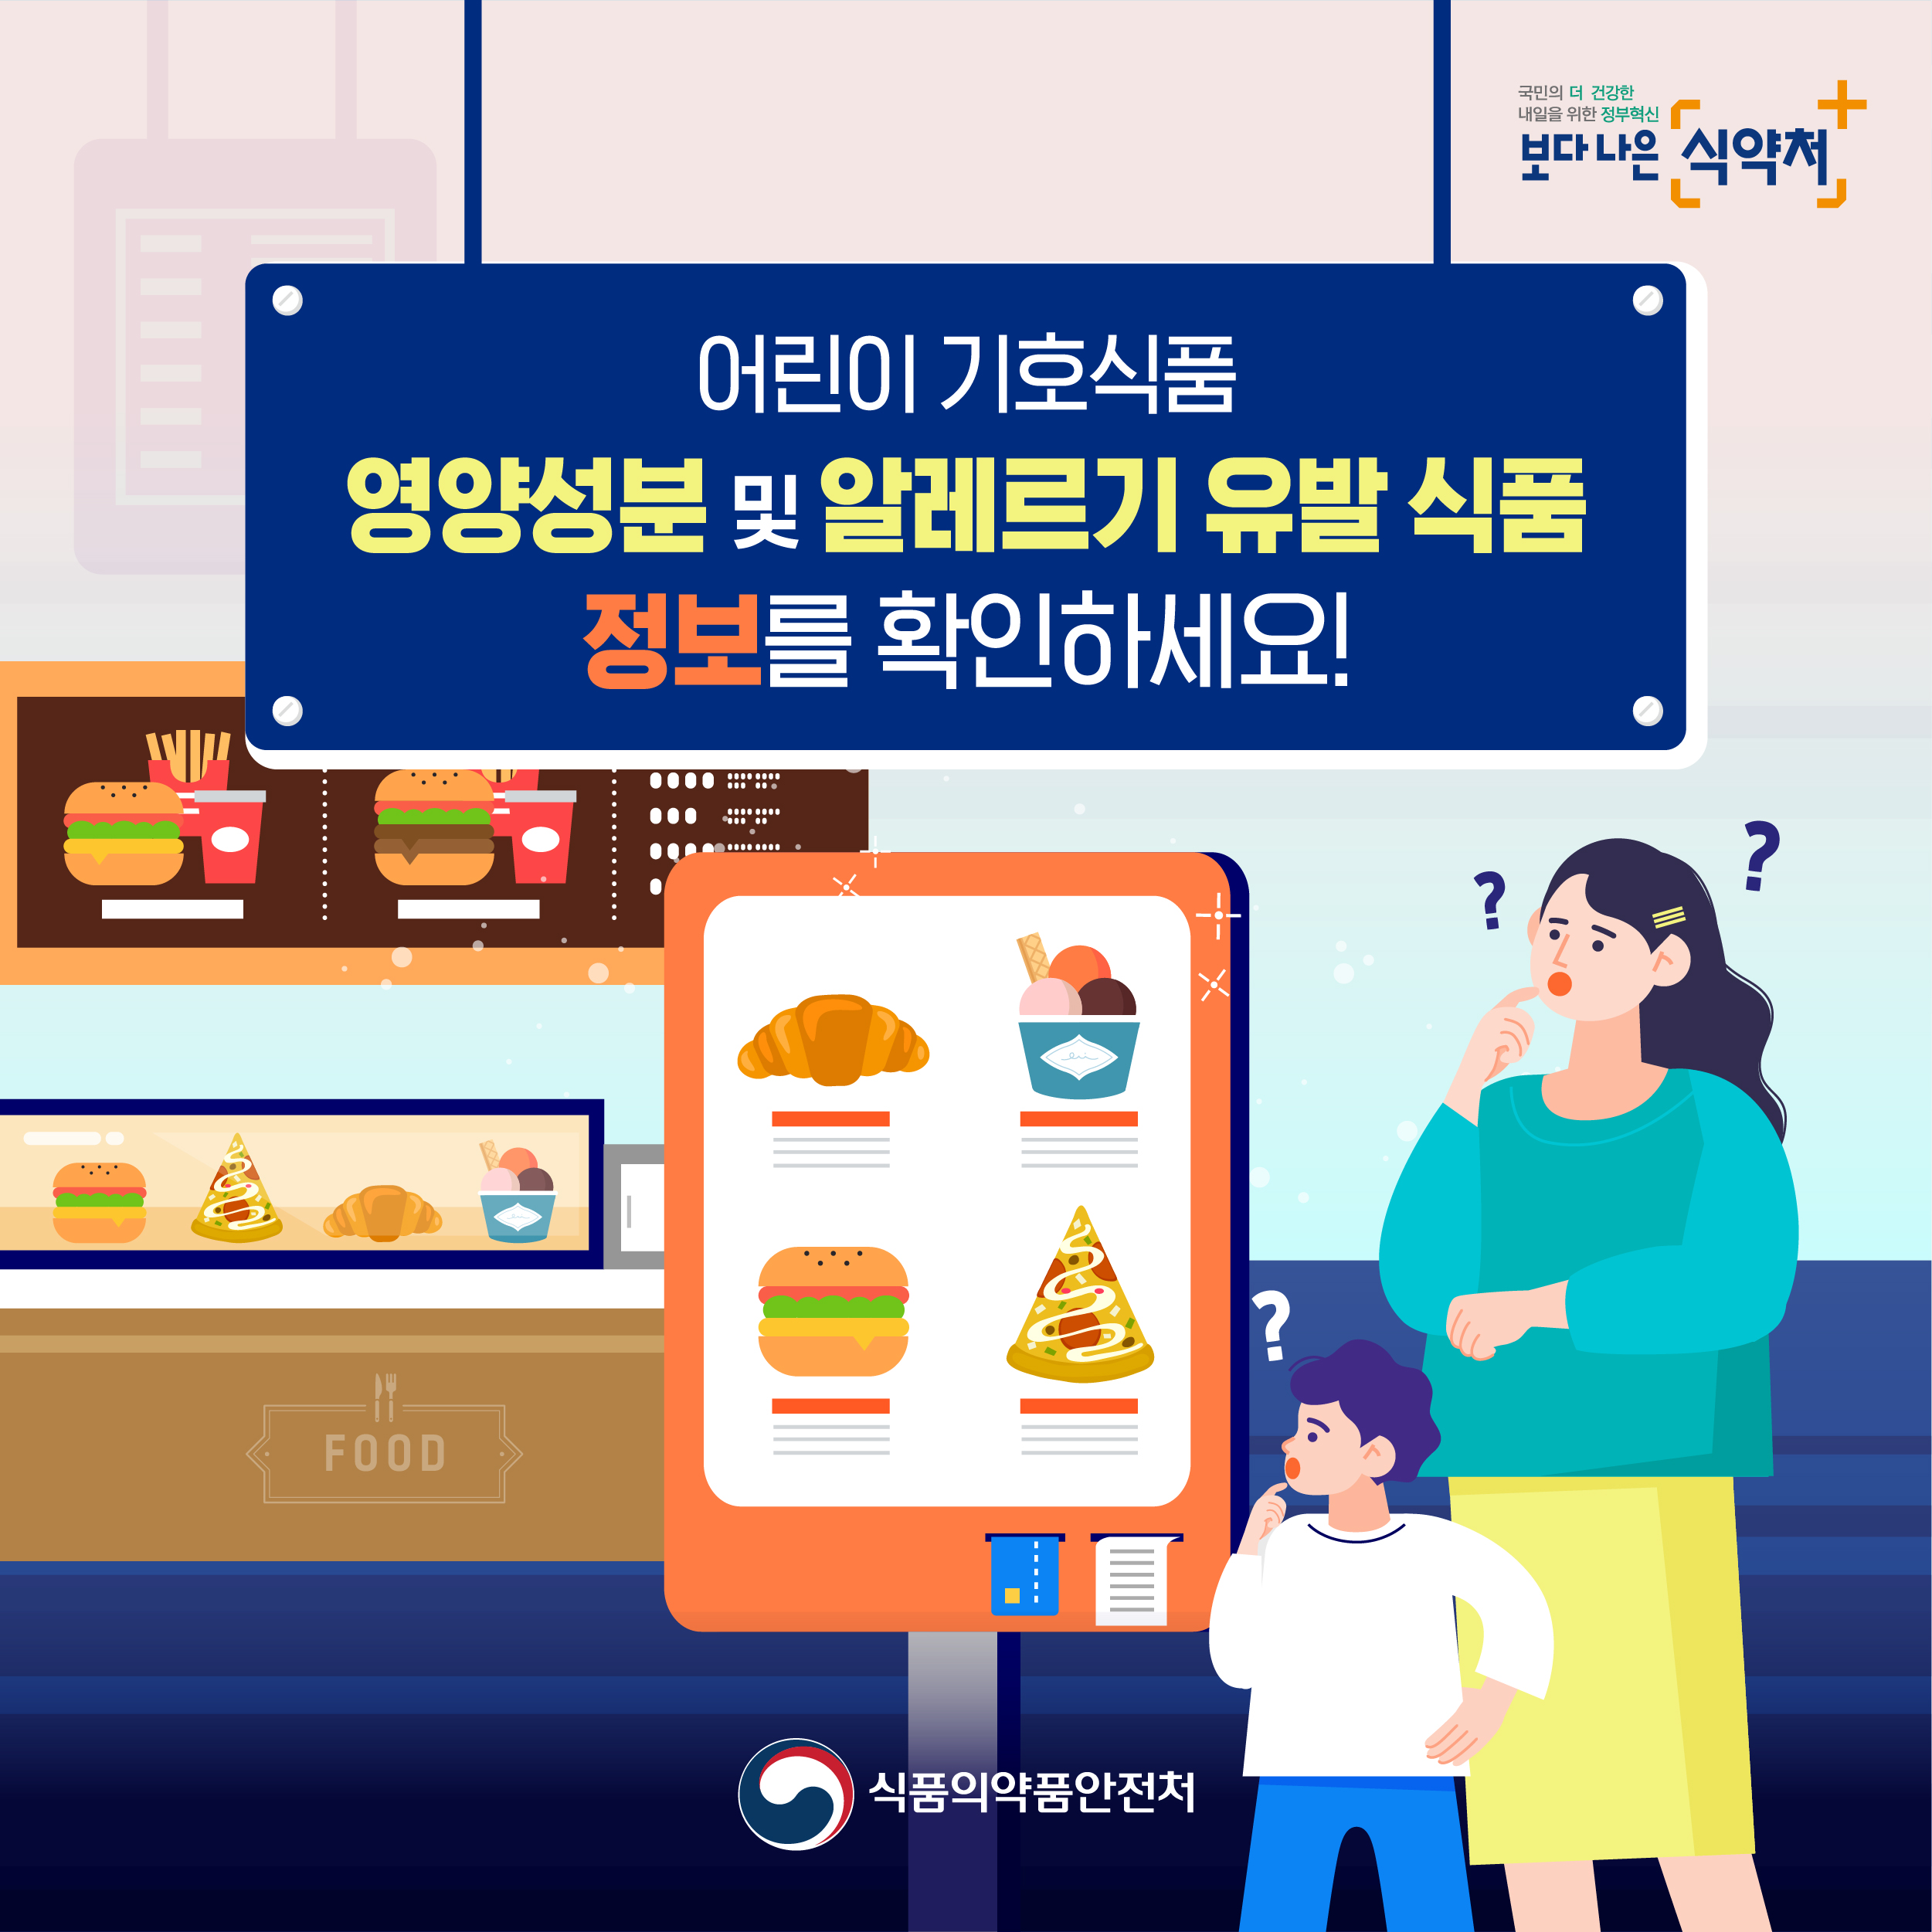 어린이 식생활 안전정보 온라인 캠페인(3.영양성분 및 알레르기 성분 표시)